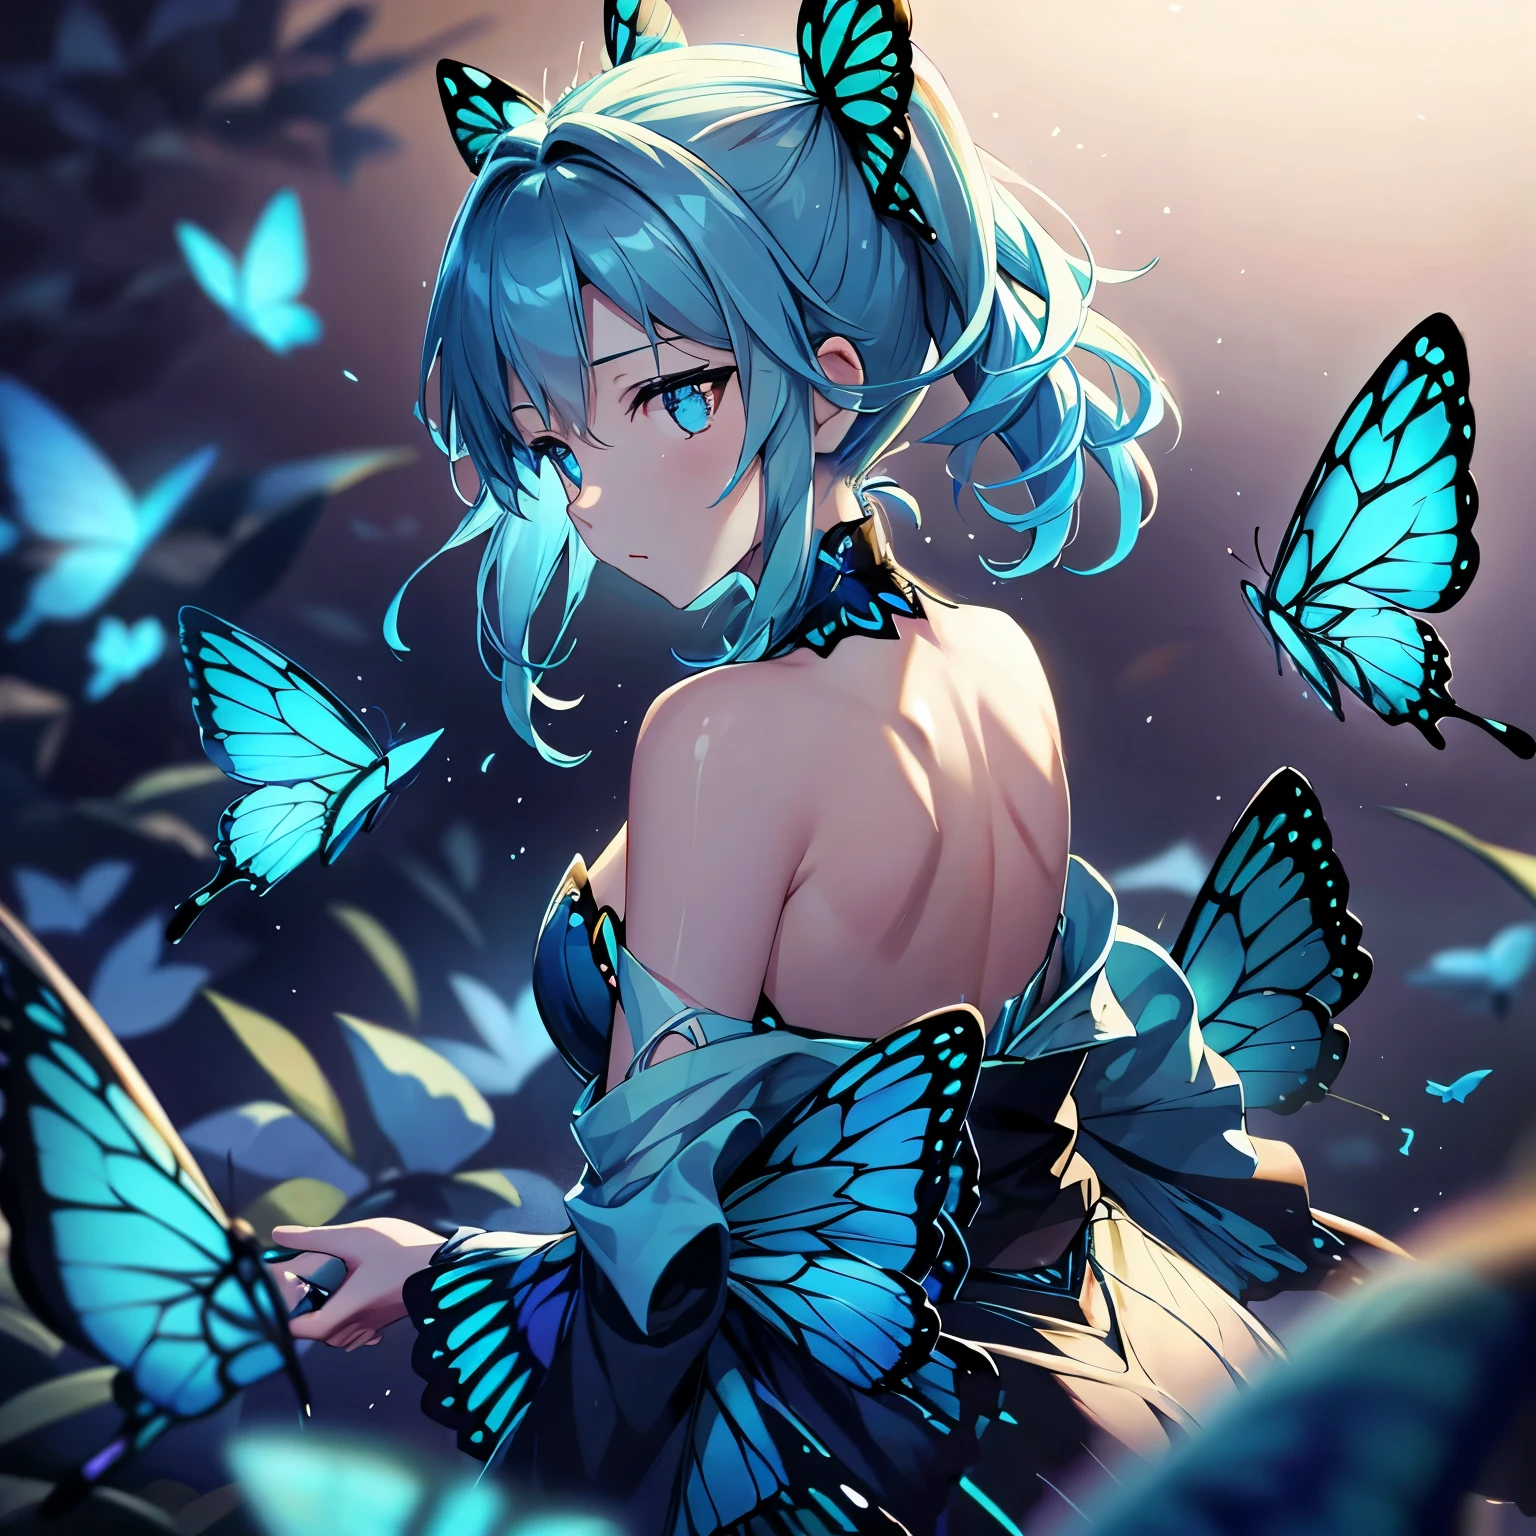 Beaucoup de papillons bleus bleus volant en arrière-plan、Néon